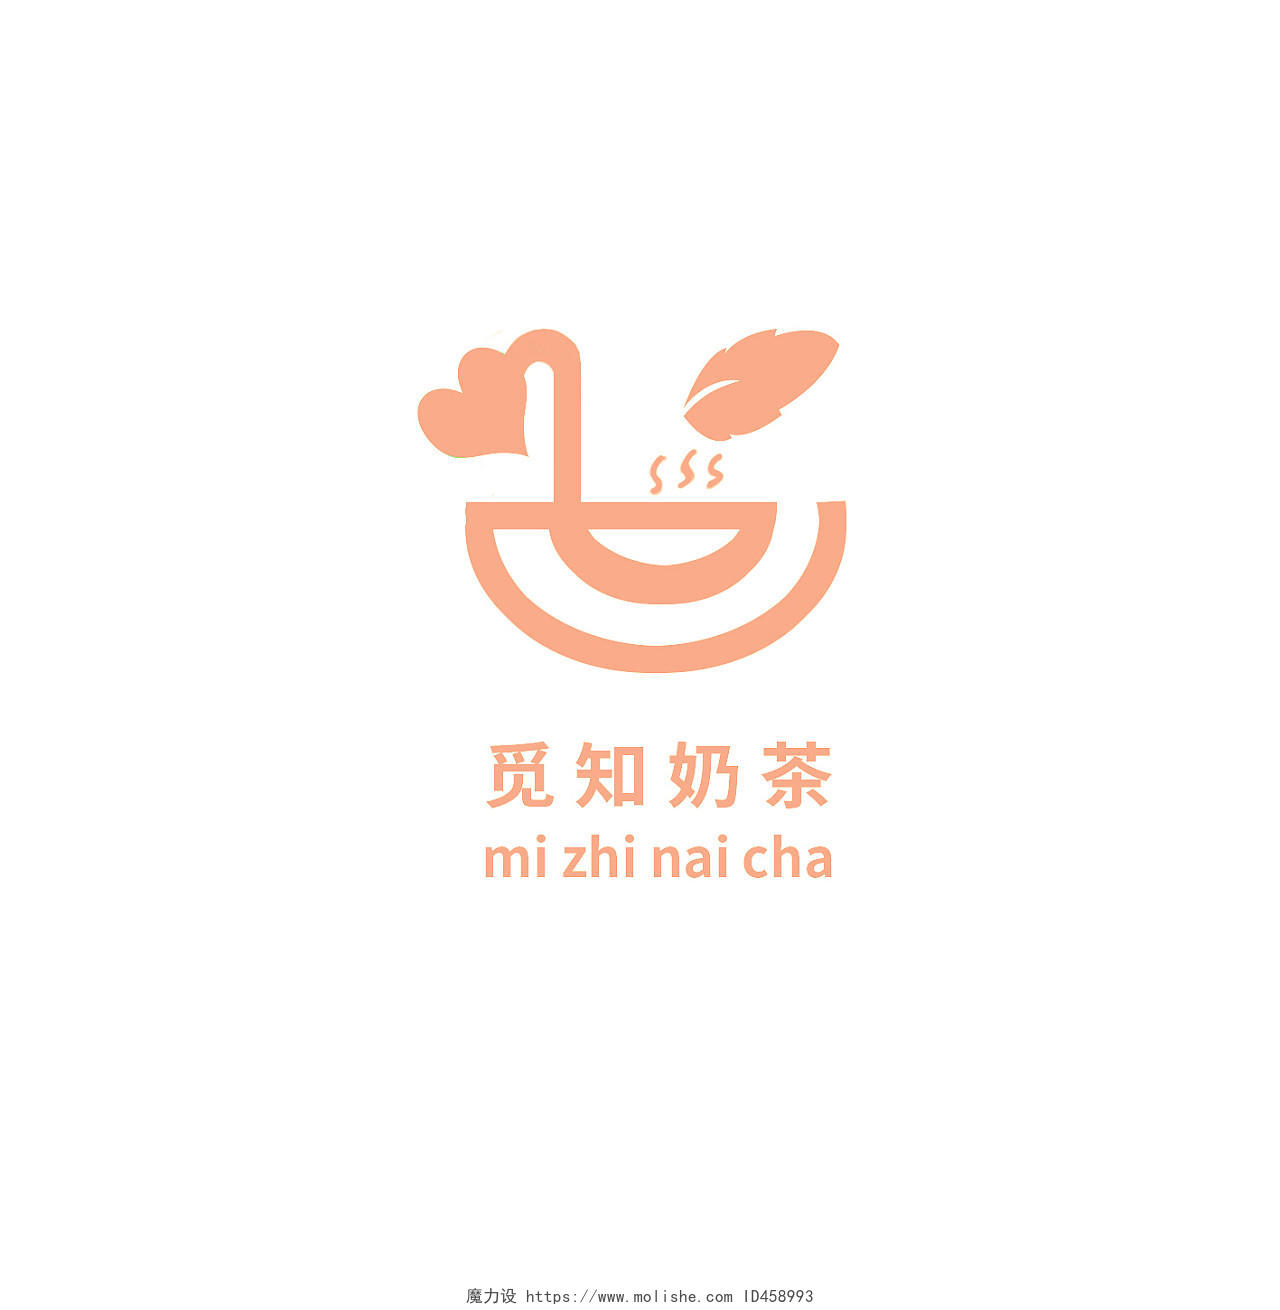 白色背景黄色标志觅知奶茶简约logo企业logo